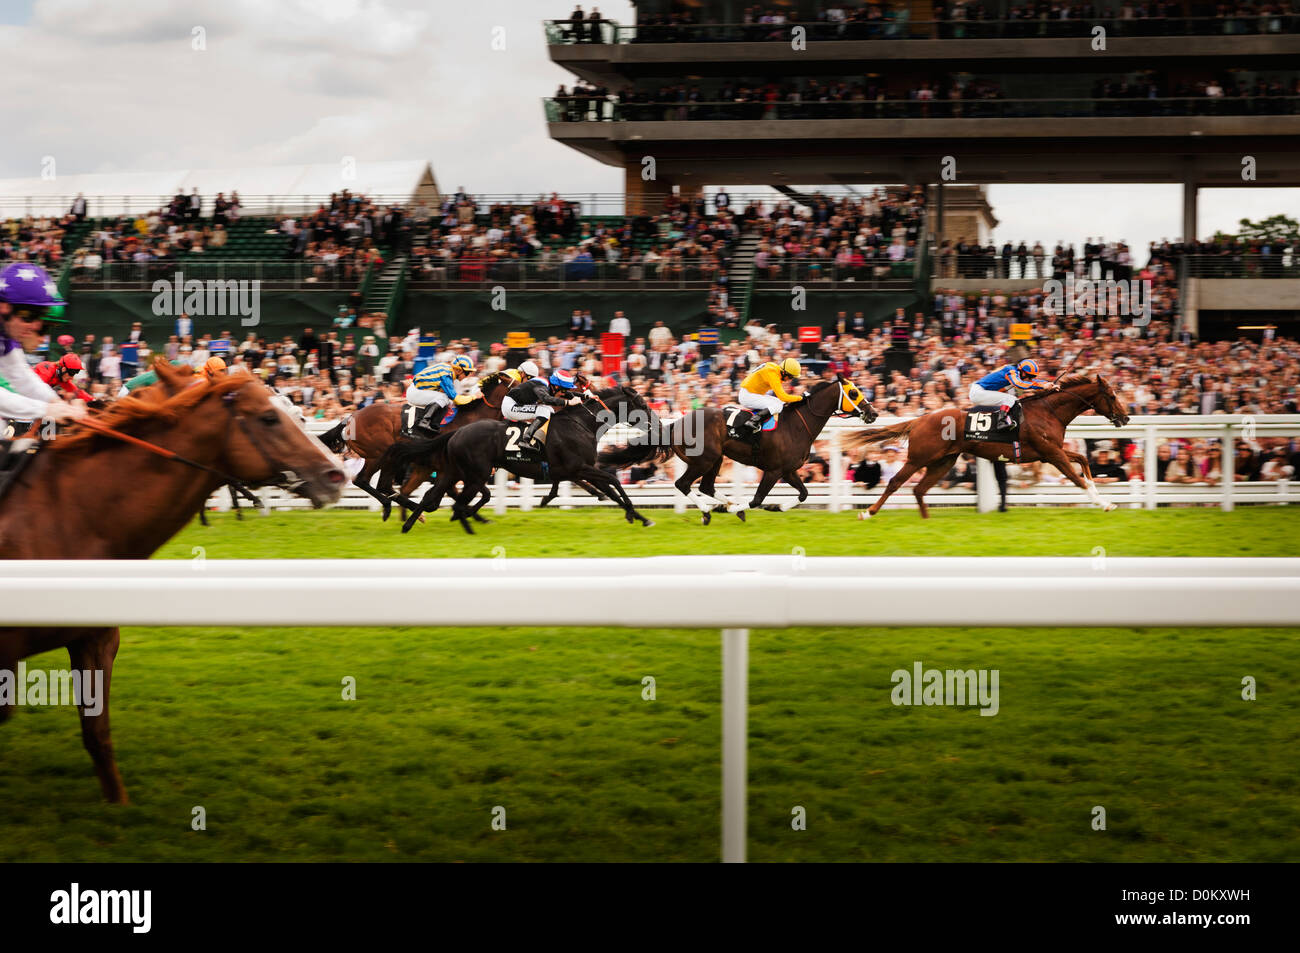 Horseracing at Royal Ascot. Stock Photo